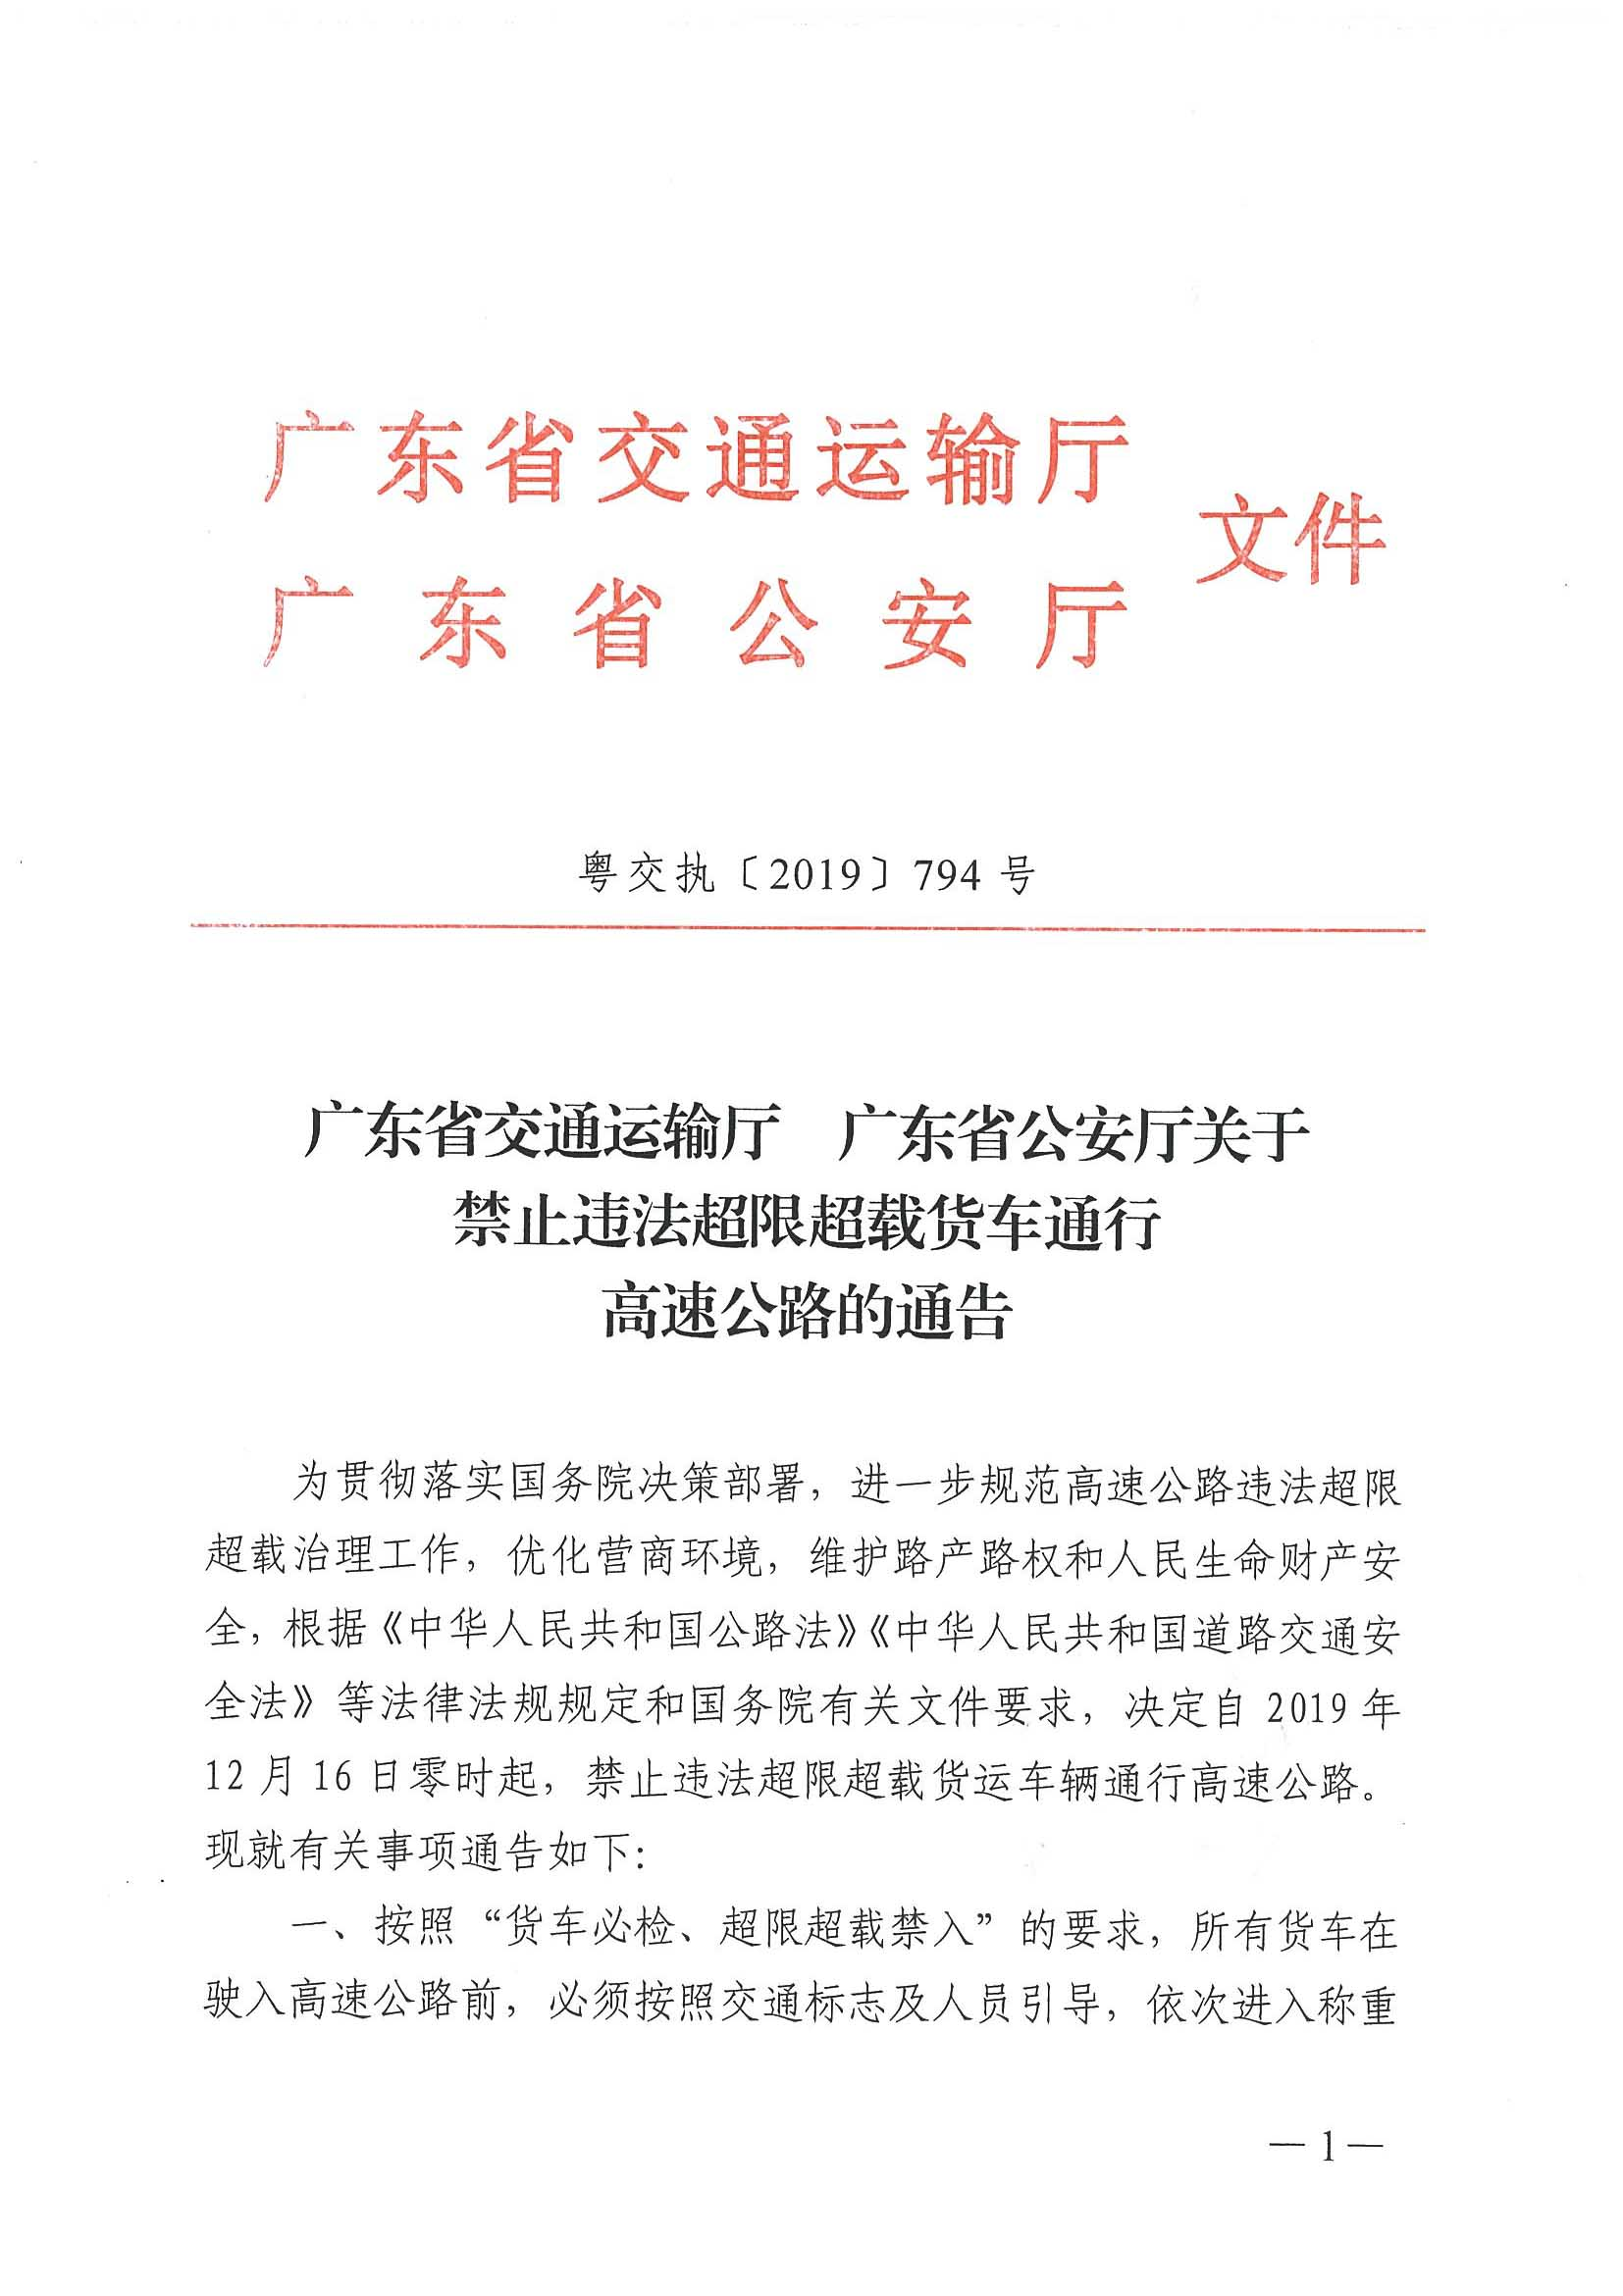 广东省交通运输厅 广东省公安厅关于禁止违法超限超载货车通行高速公路的通告